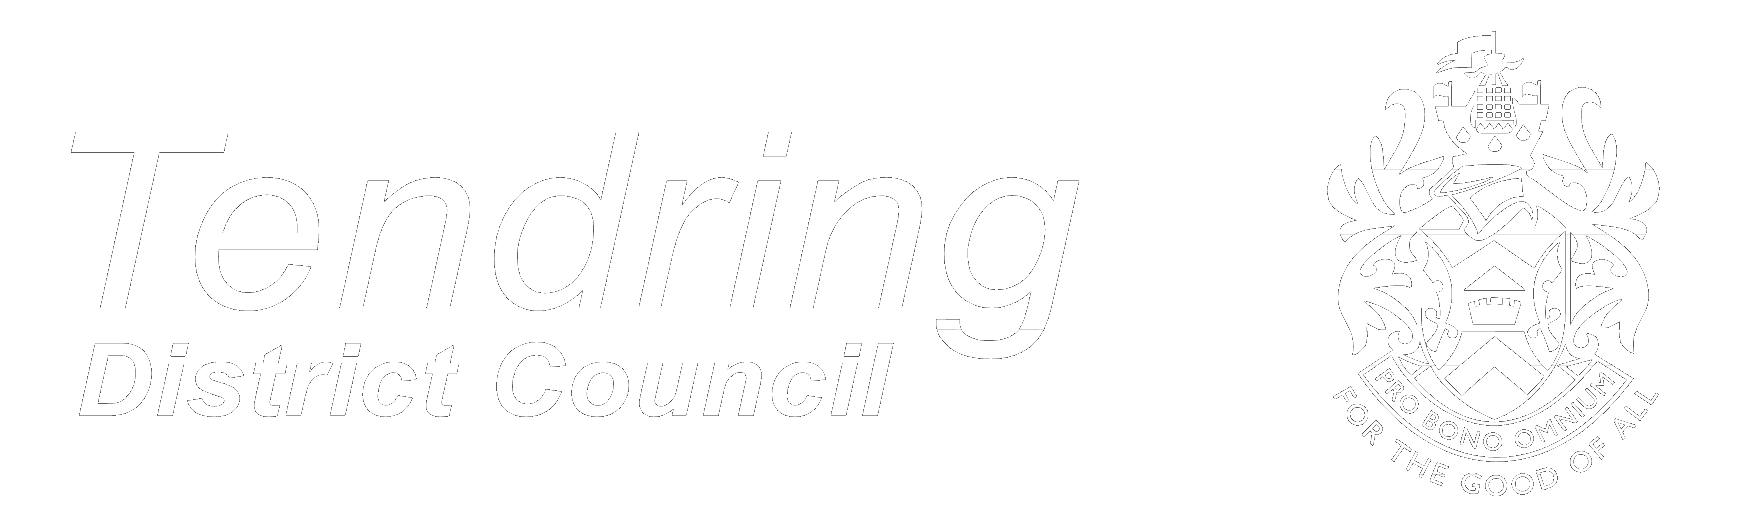 Tendring Council Logo